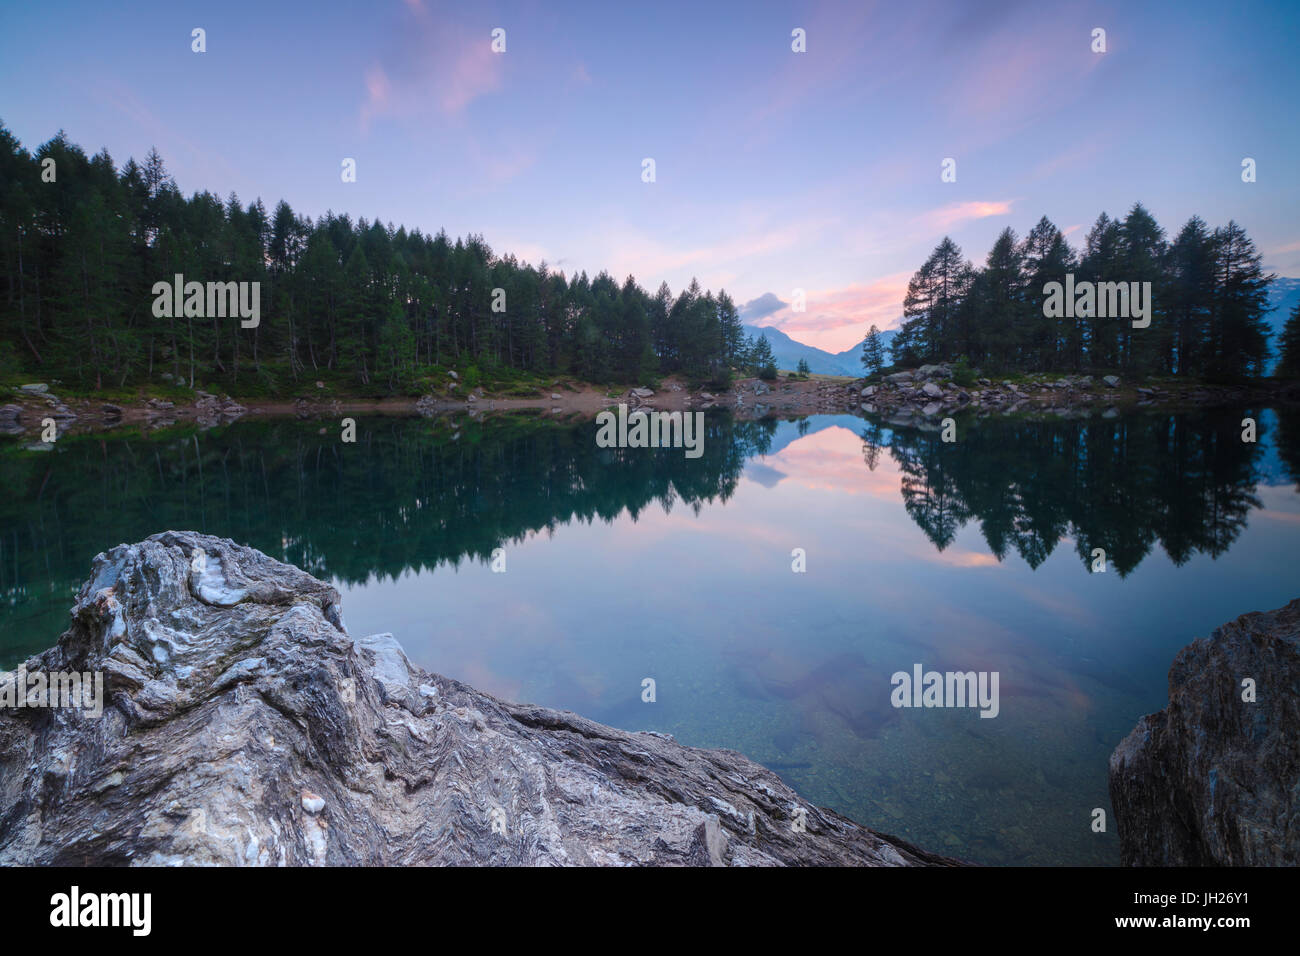 Arbres se reflétant dans la région de Lago Azzurro sous ciel rose à l'aube, Motta Madesimo, vallée, Cf Alpina Valtellina, Sondrio, Lombardie, Italie Banque D'Images